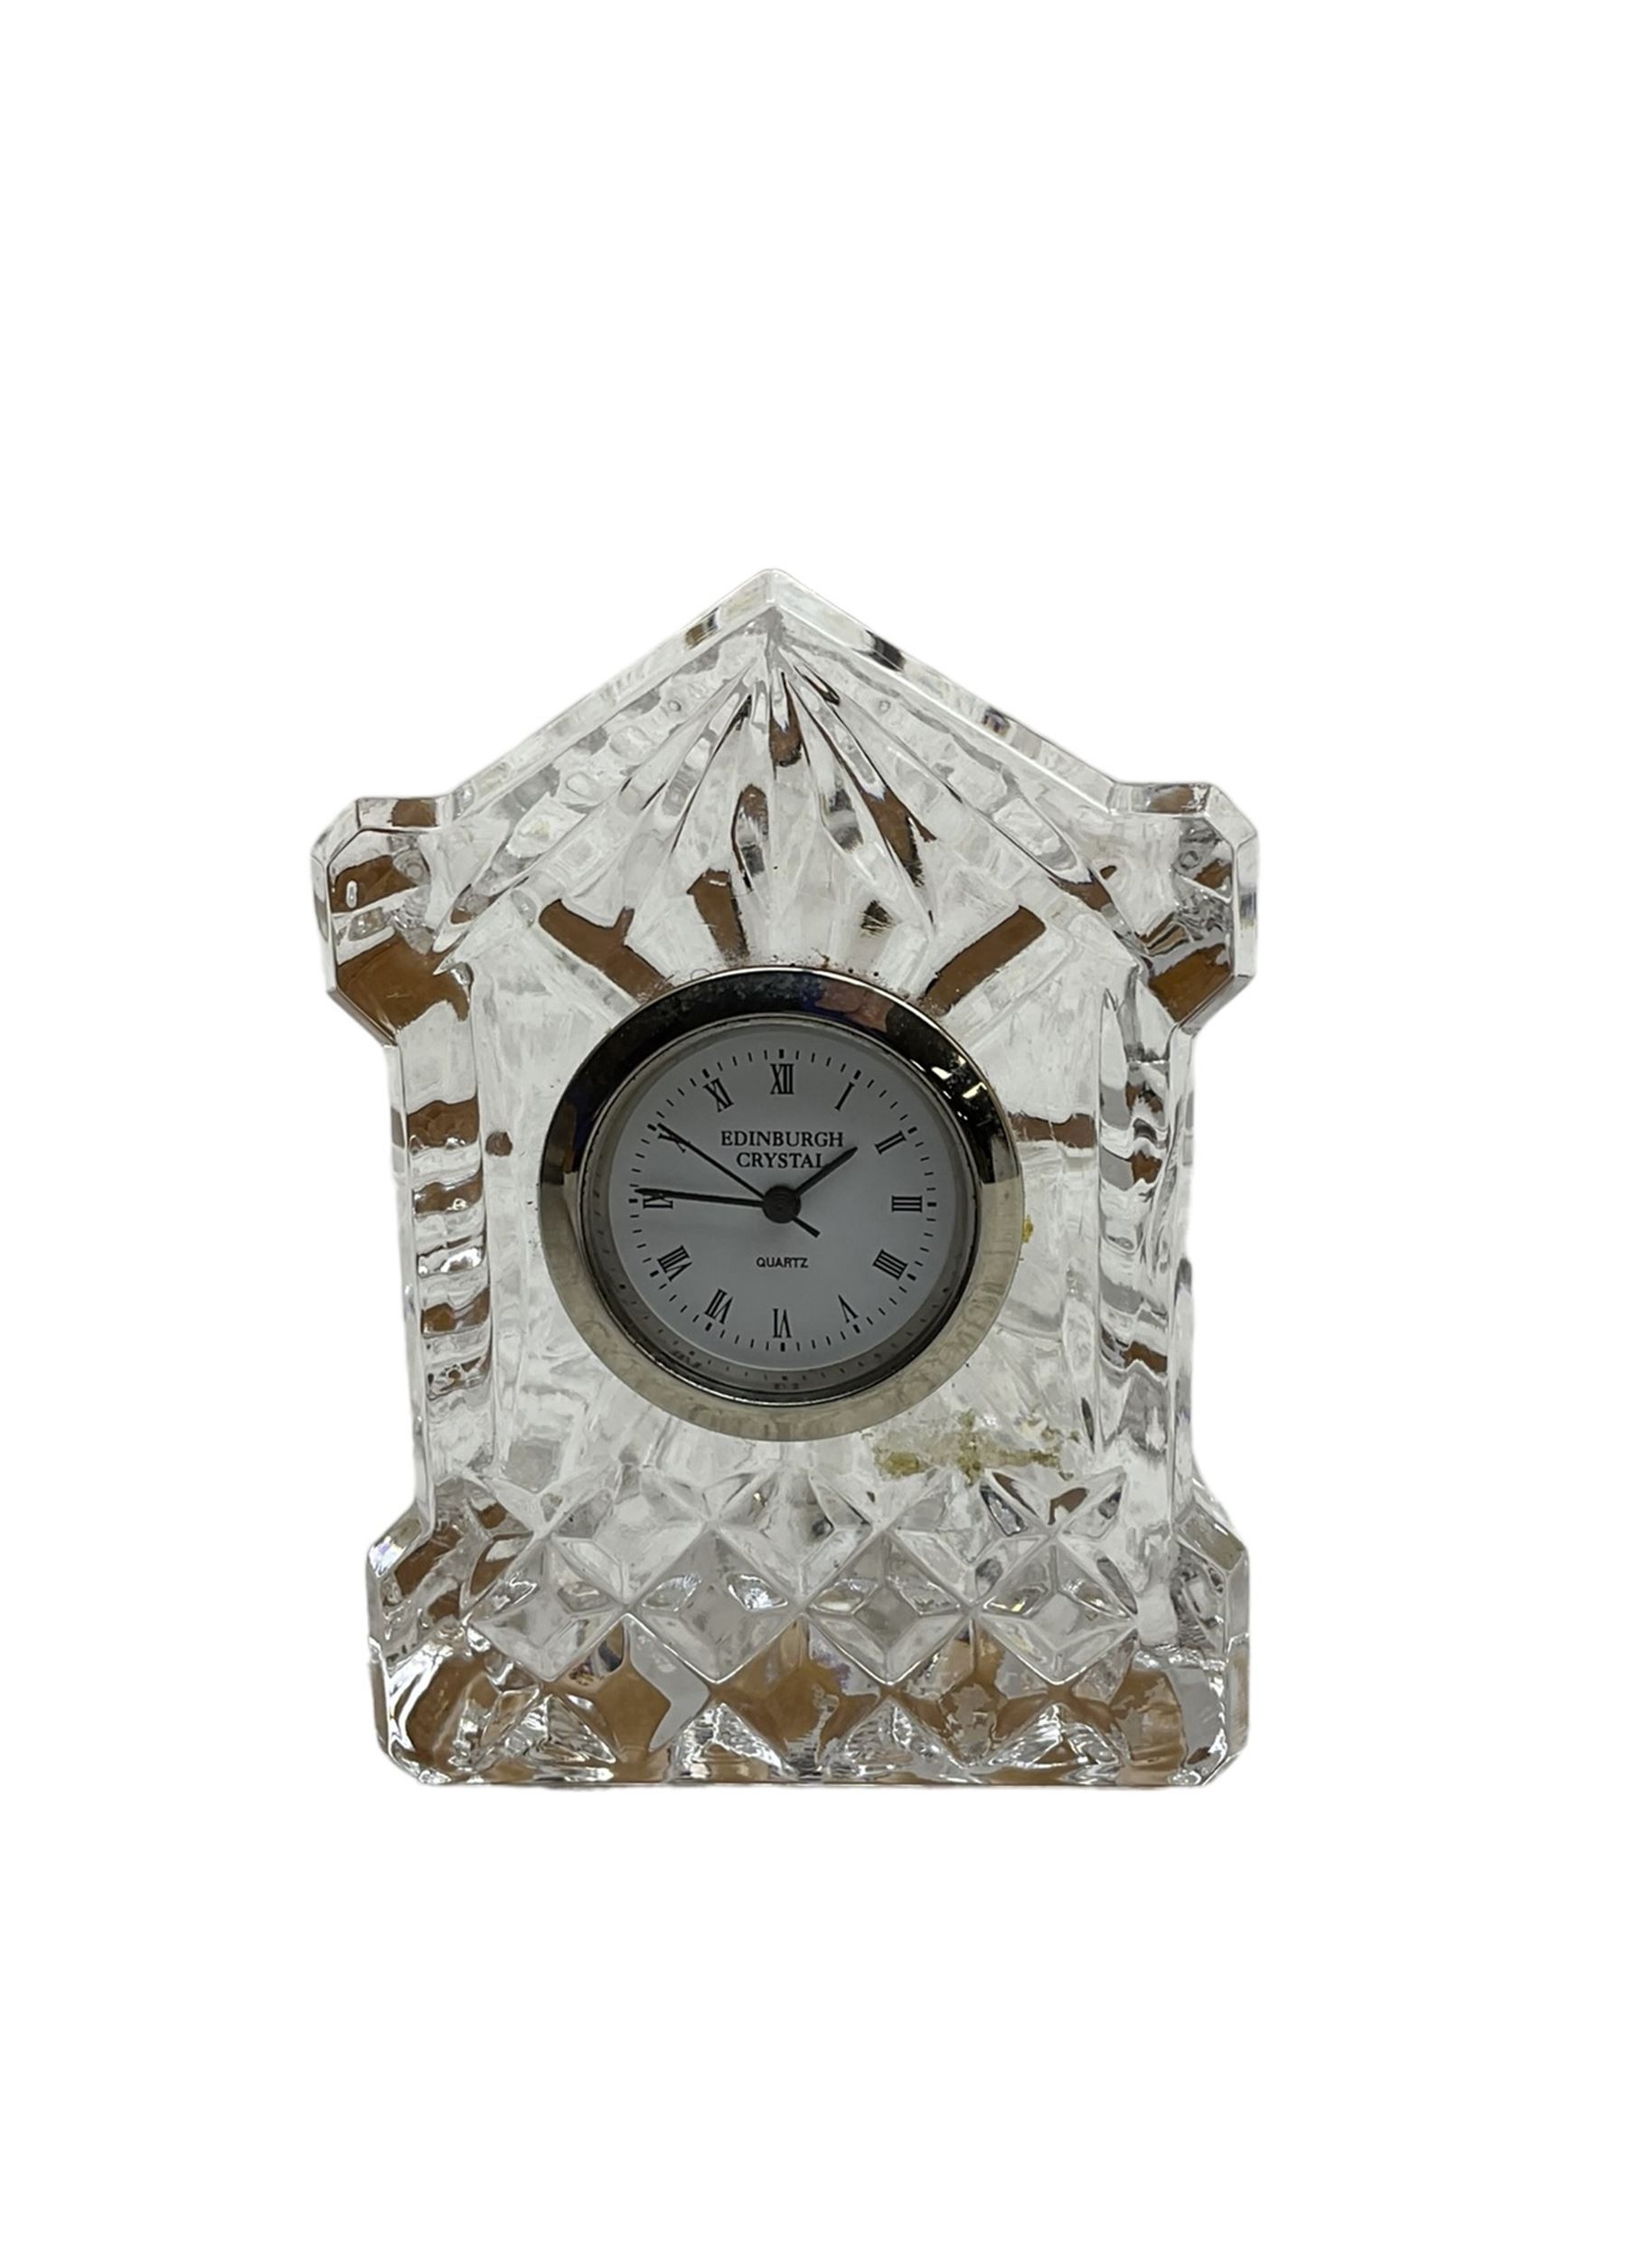 Enfield - 1930’s striking mantle clock in a Bakelite case - Image 3 of 3